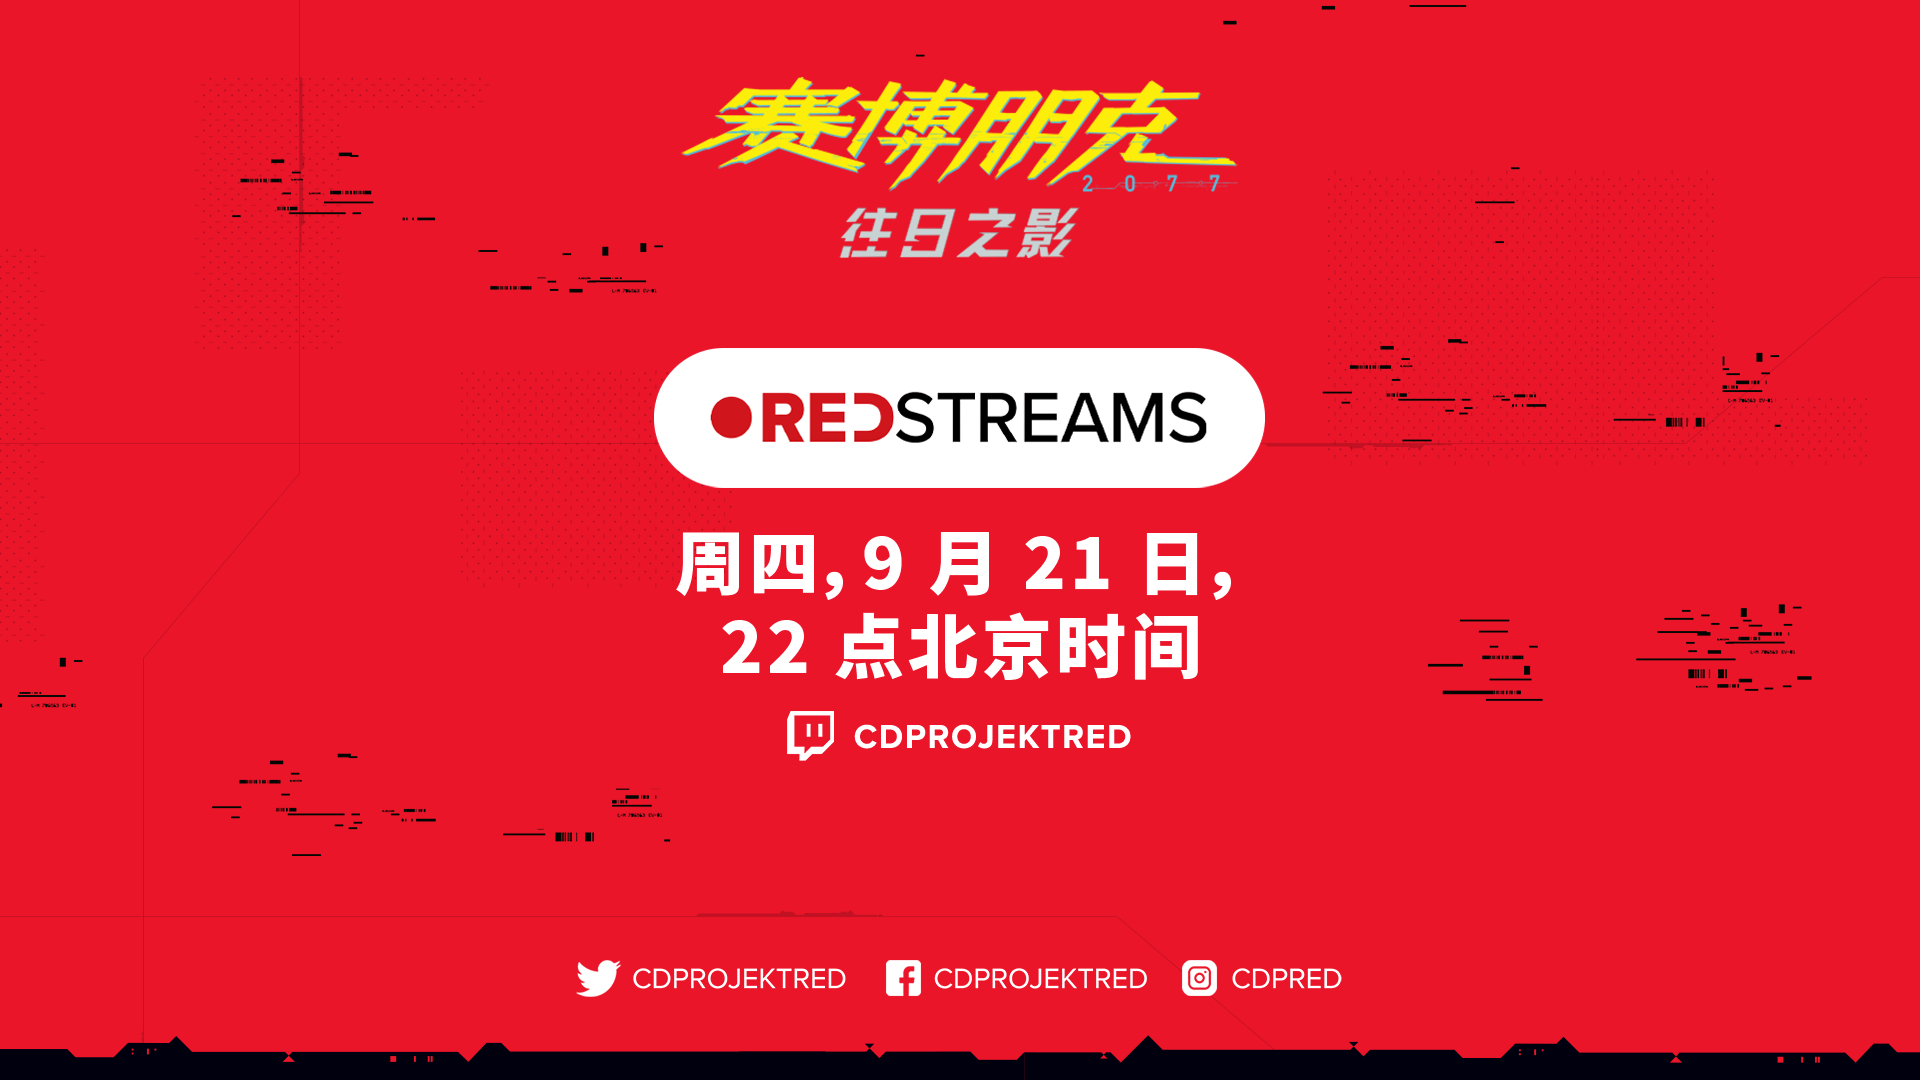 下一集REDstreams直播將於9月21日(星期四)晚10